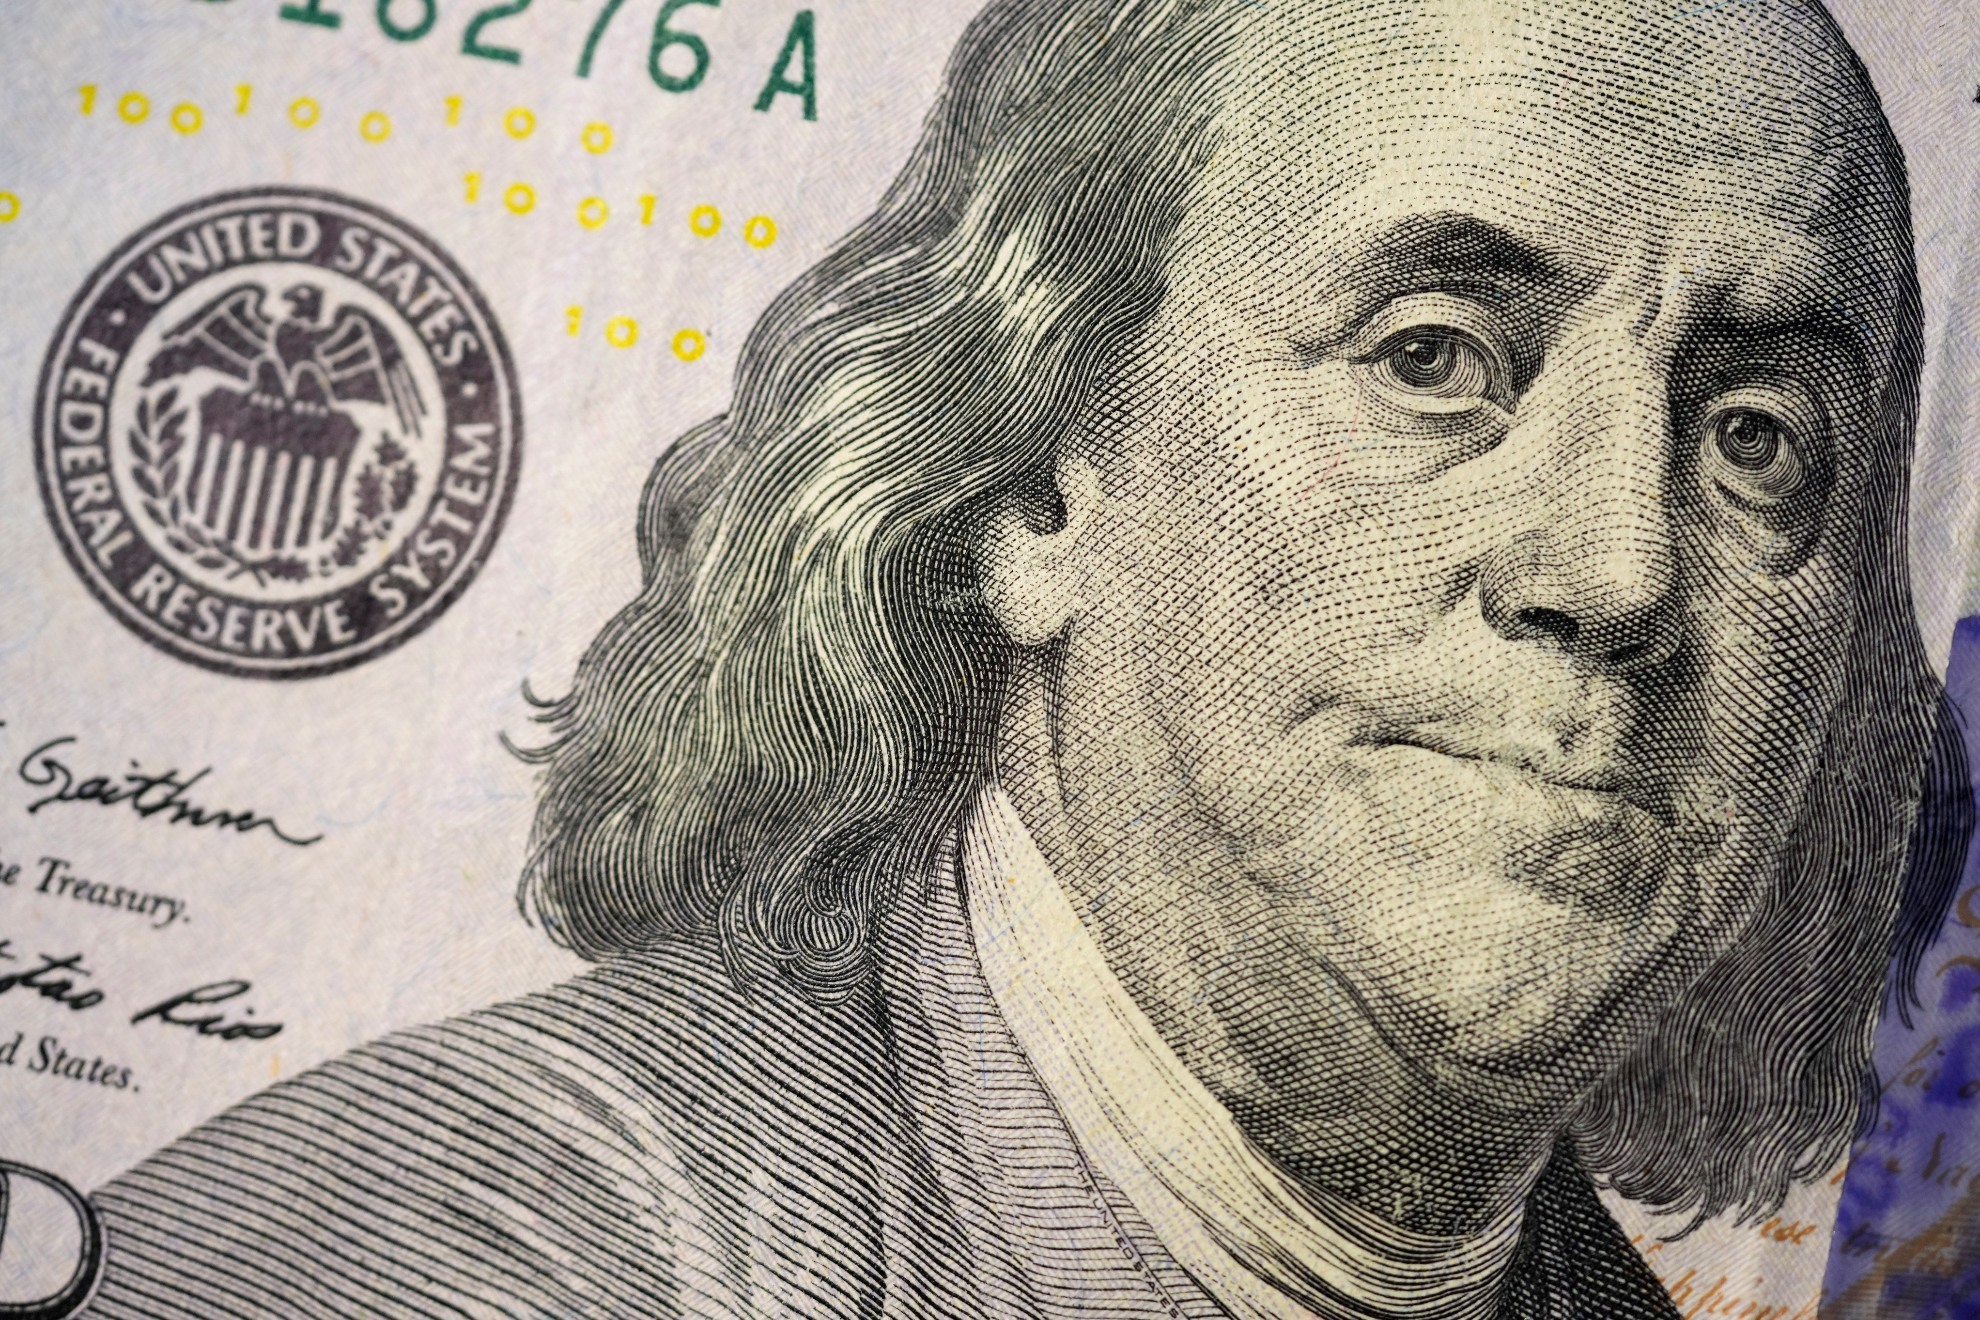 Banejamin Franklin on the $100 dollar bill